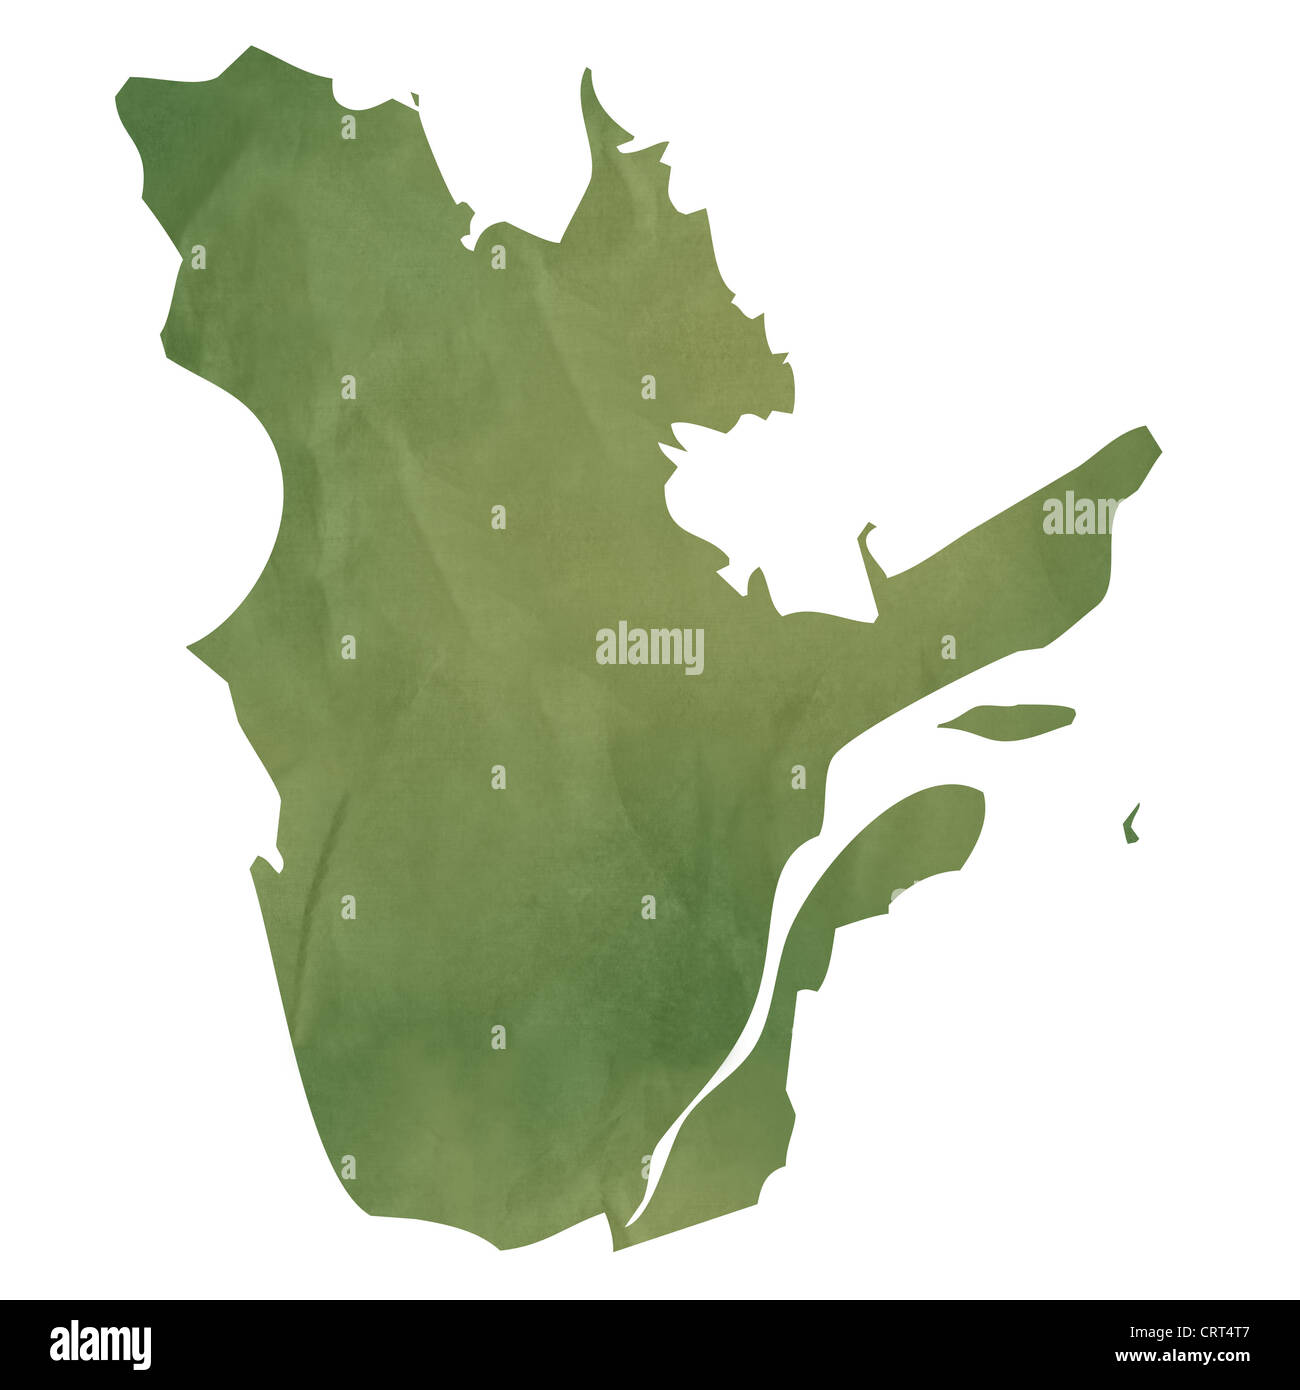 Province de Québec Canada Carte de l'ancien papier vert isolé sur fond blanc. Banque D'Images